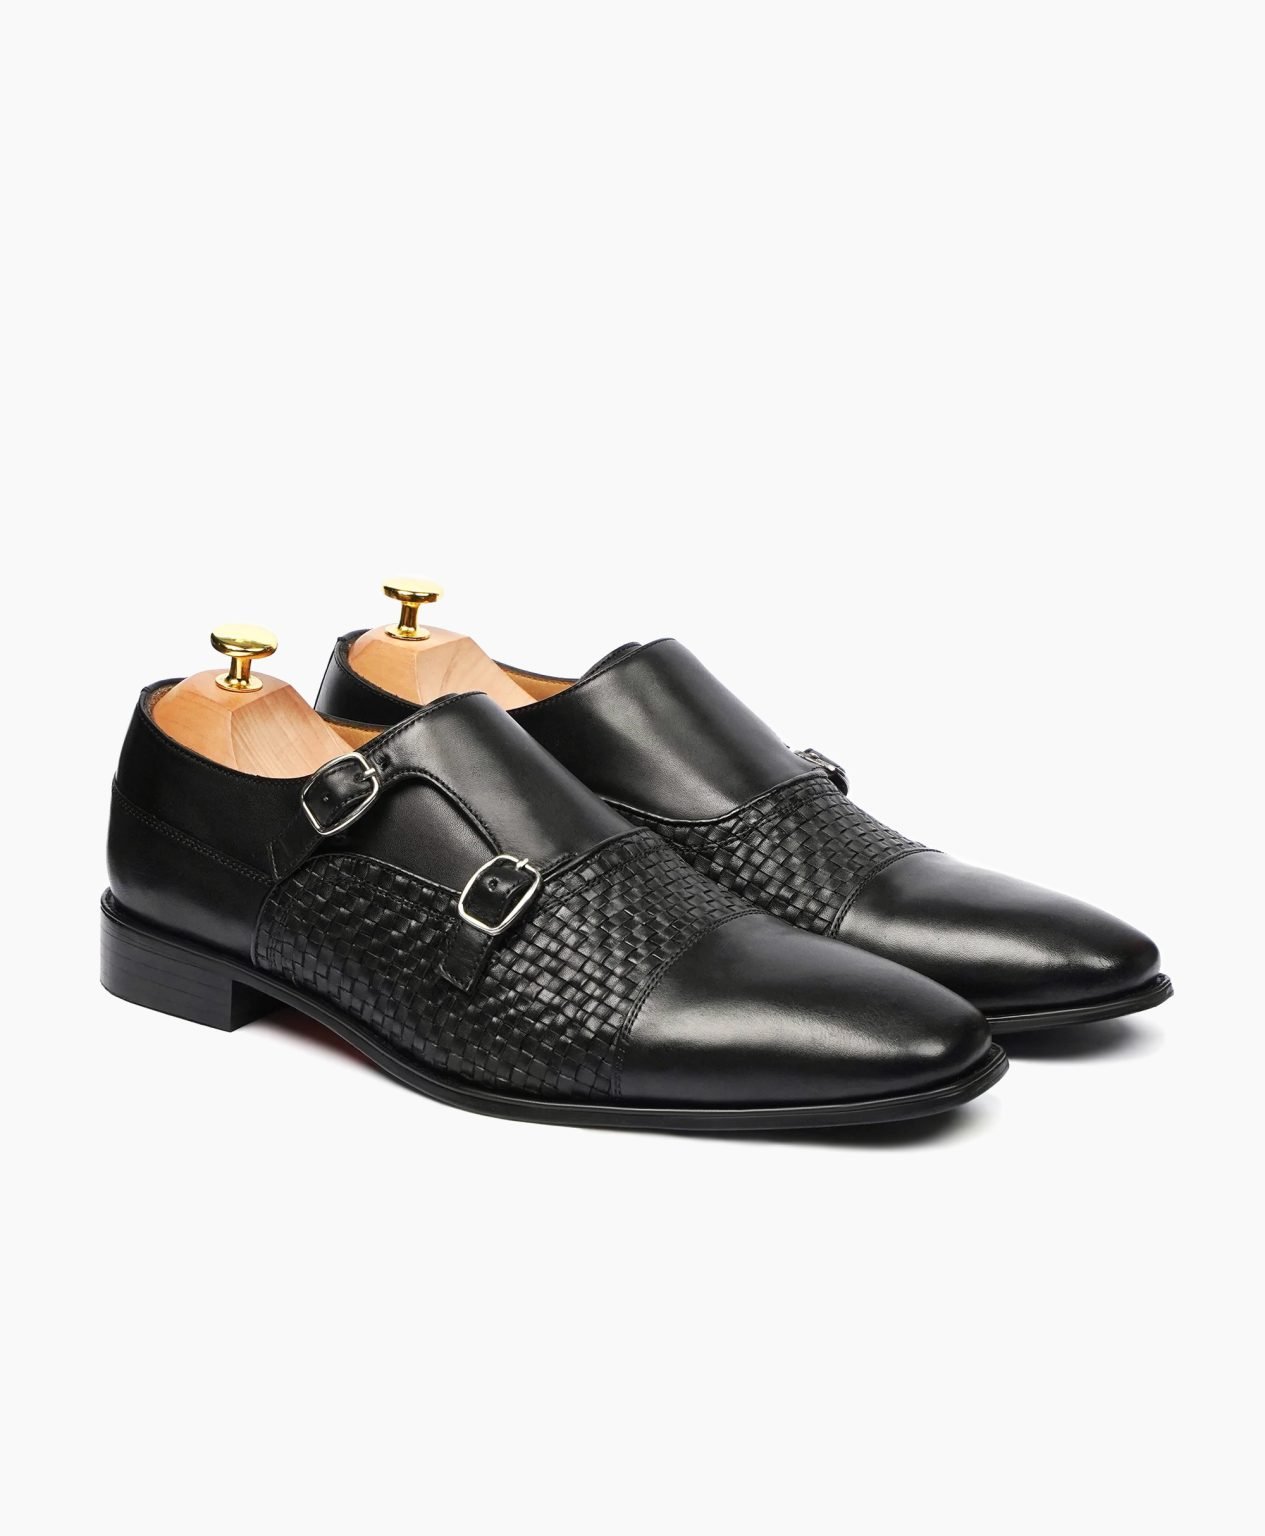 dawlish-double-monkstrap-black-leather-shoes-image200